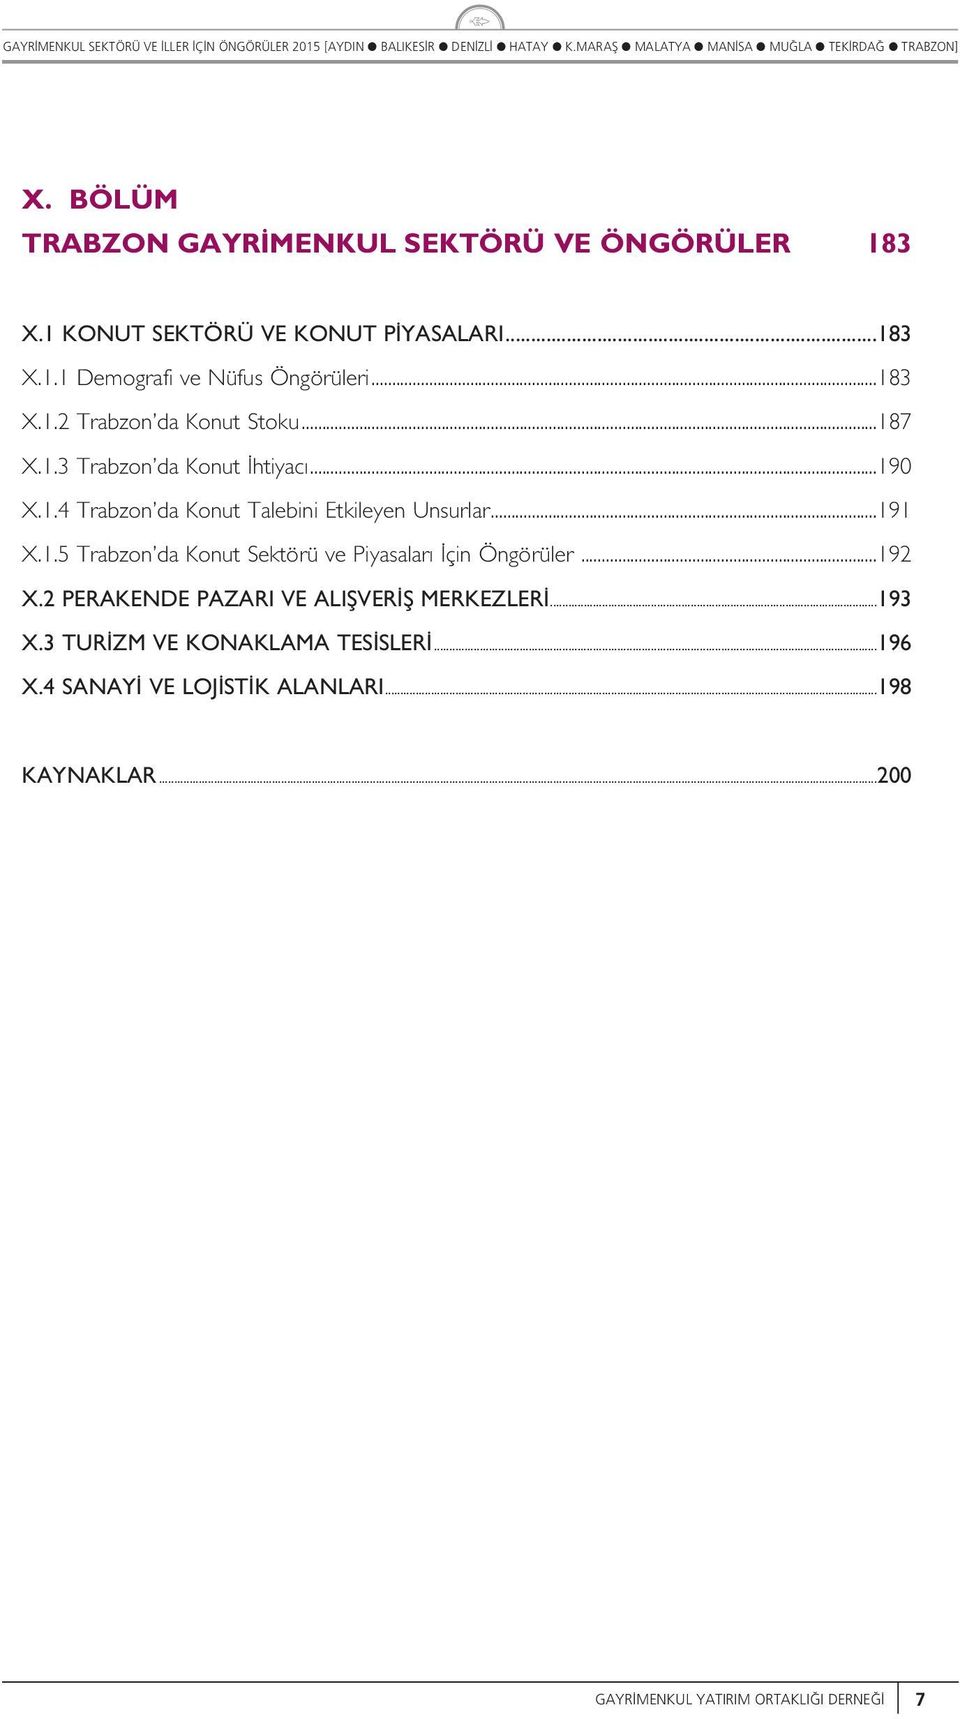 ..191 X.1.5 Trabzon da Kont Sektörü ve Piyasaar çin Öngörüer...192 X.2 PERAKENDE PAZARI VE ALIfiVER fi MERKEZLER...193 X.